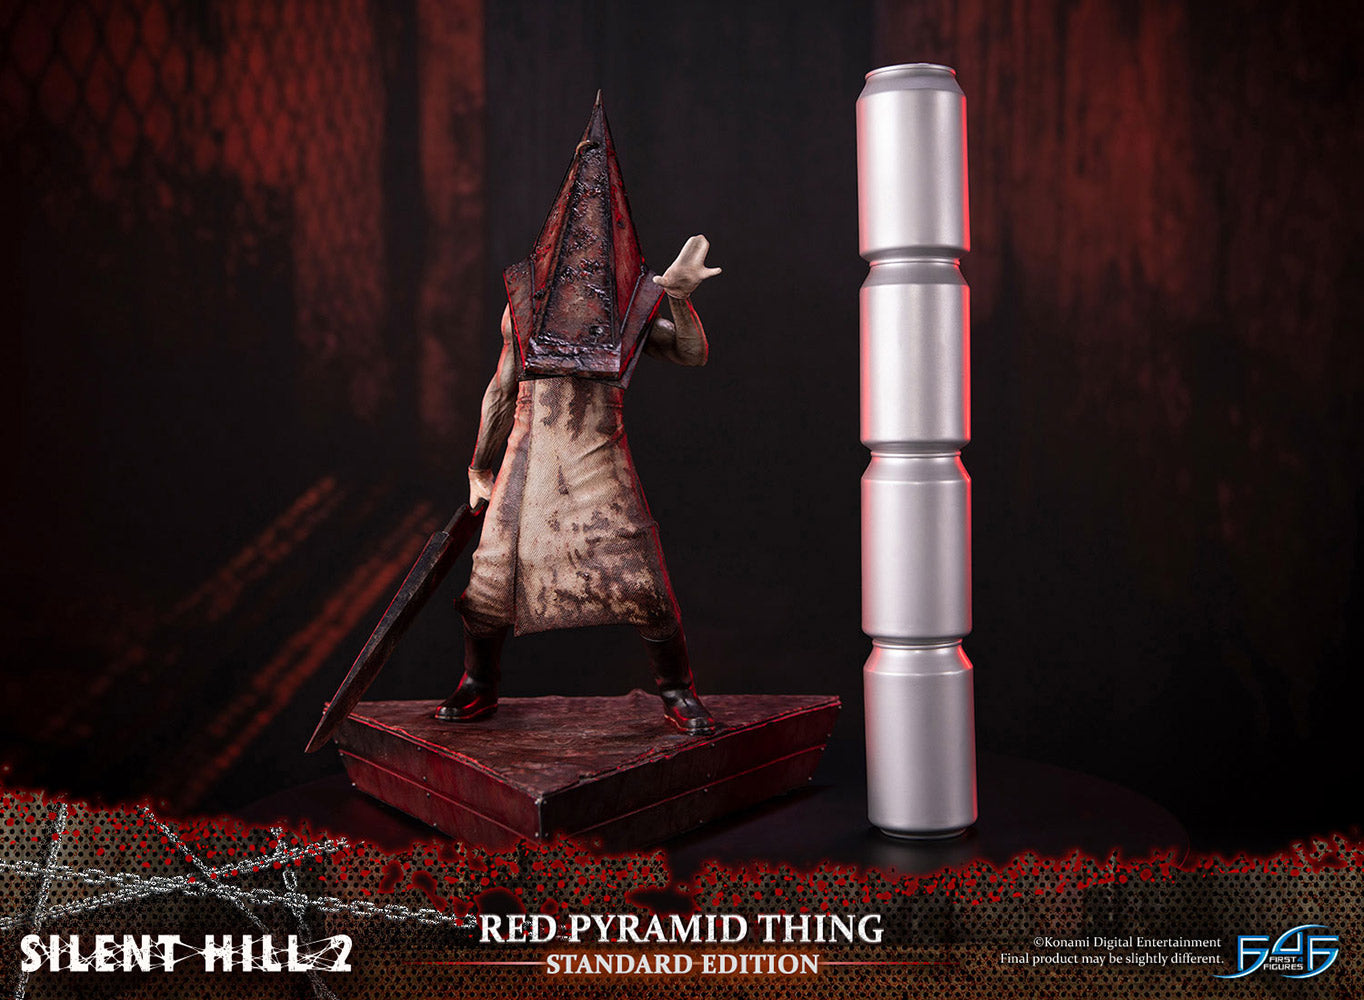 Silent Hill 2 Pyramid Head Gecco Statue Pre-Orders Open - Siliconera